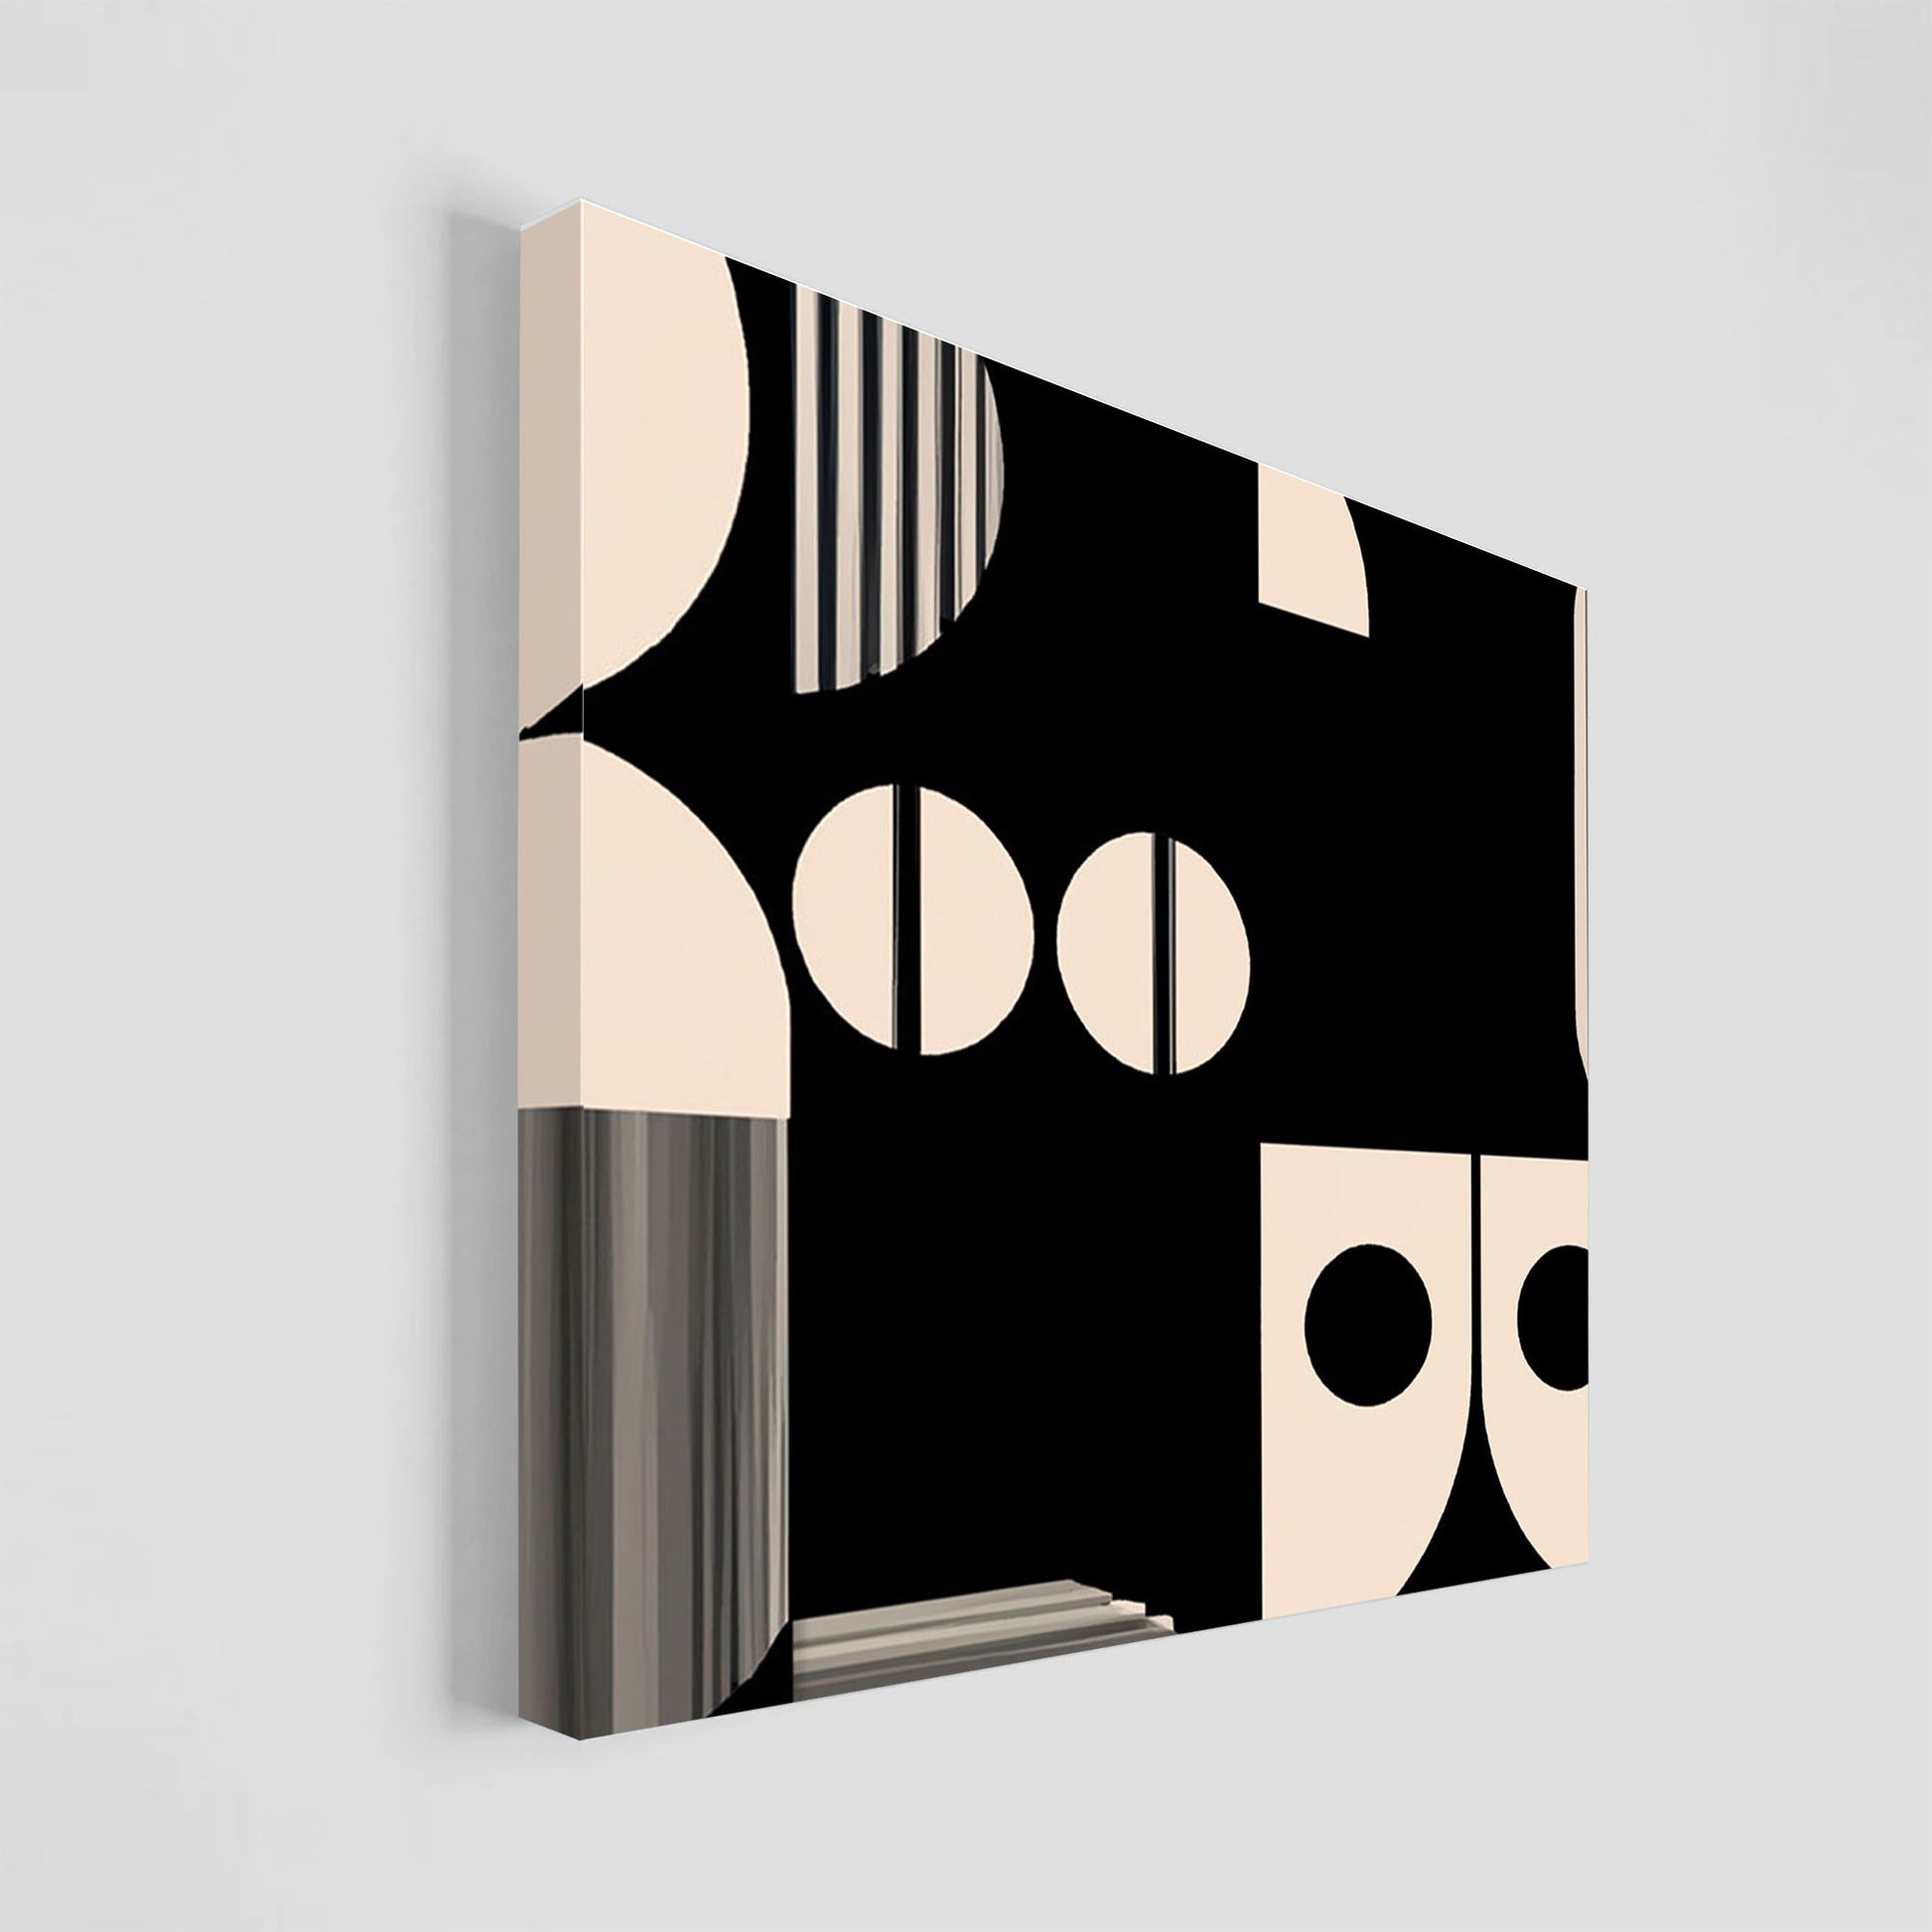 Arte abstracto en tonos neutros con diseño geométrico de círculos y líneas en beige y negro.